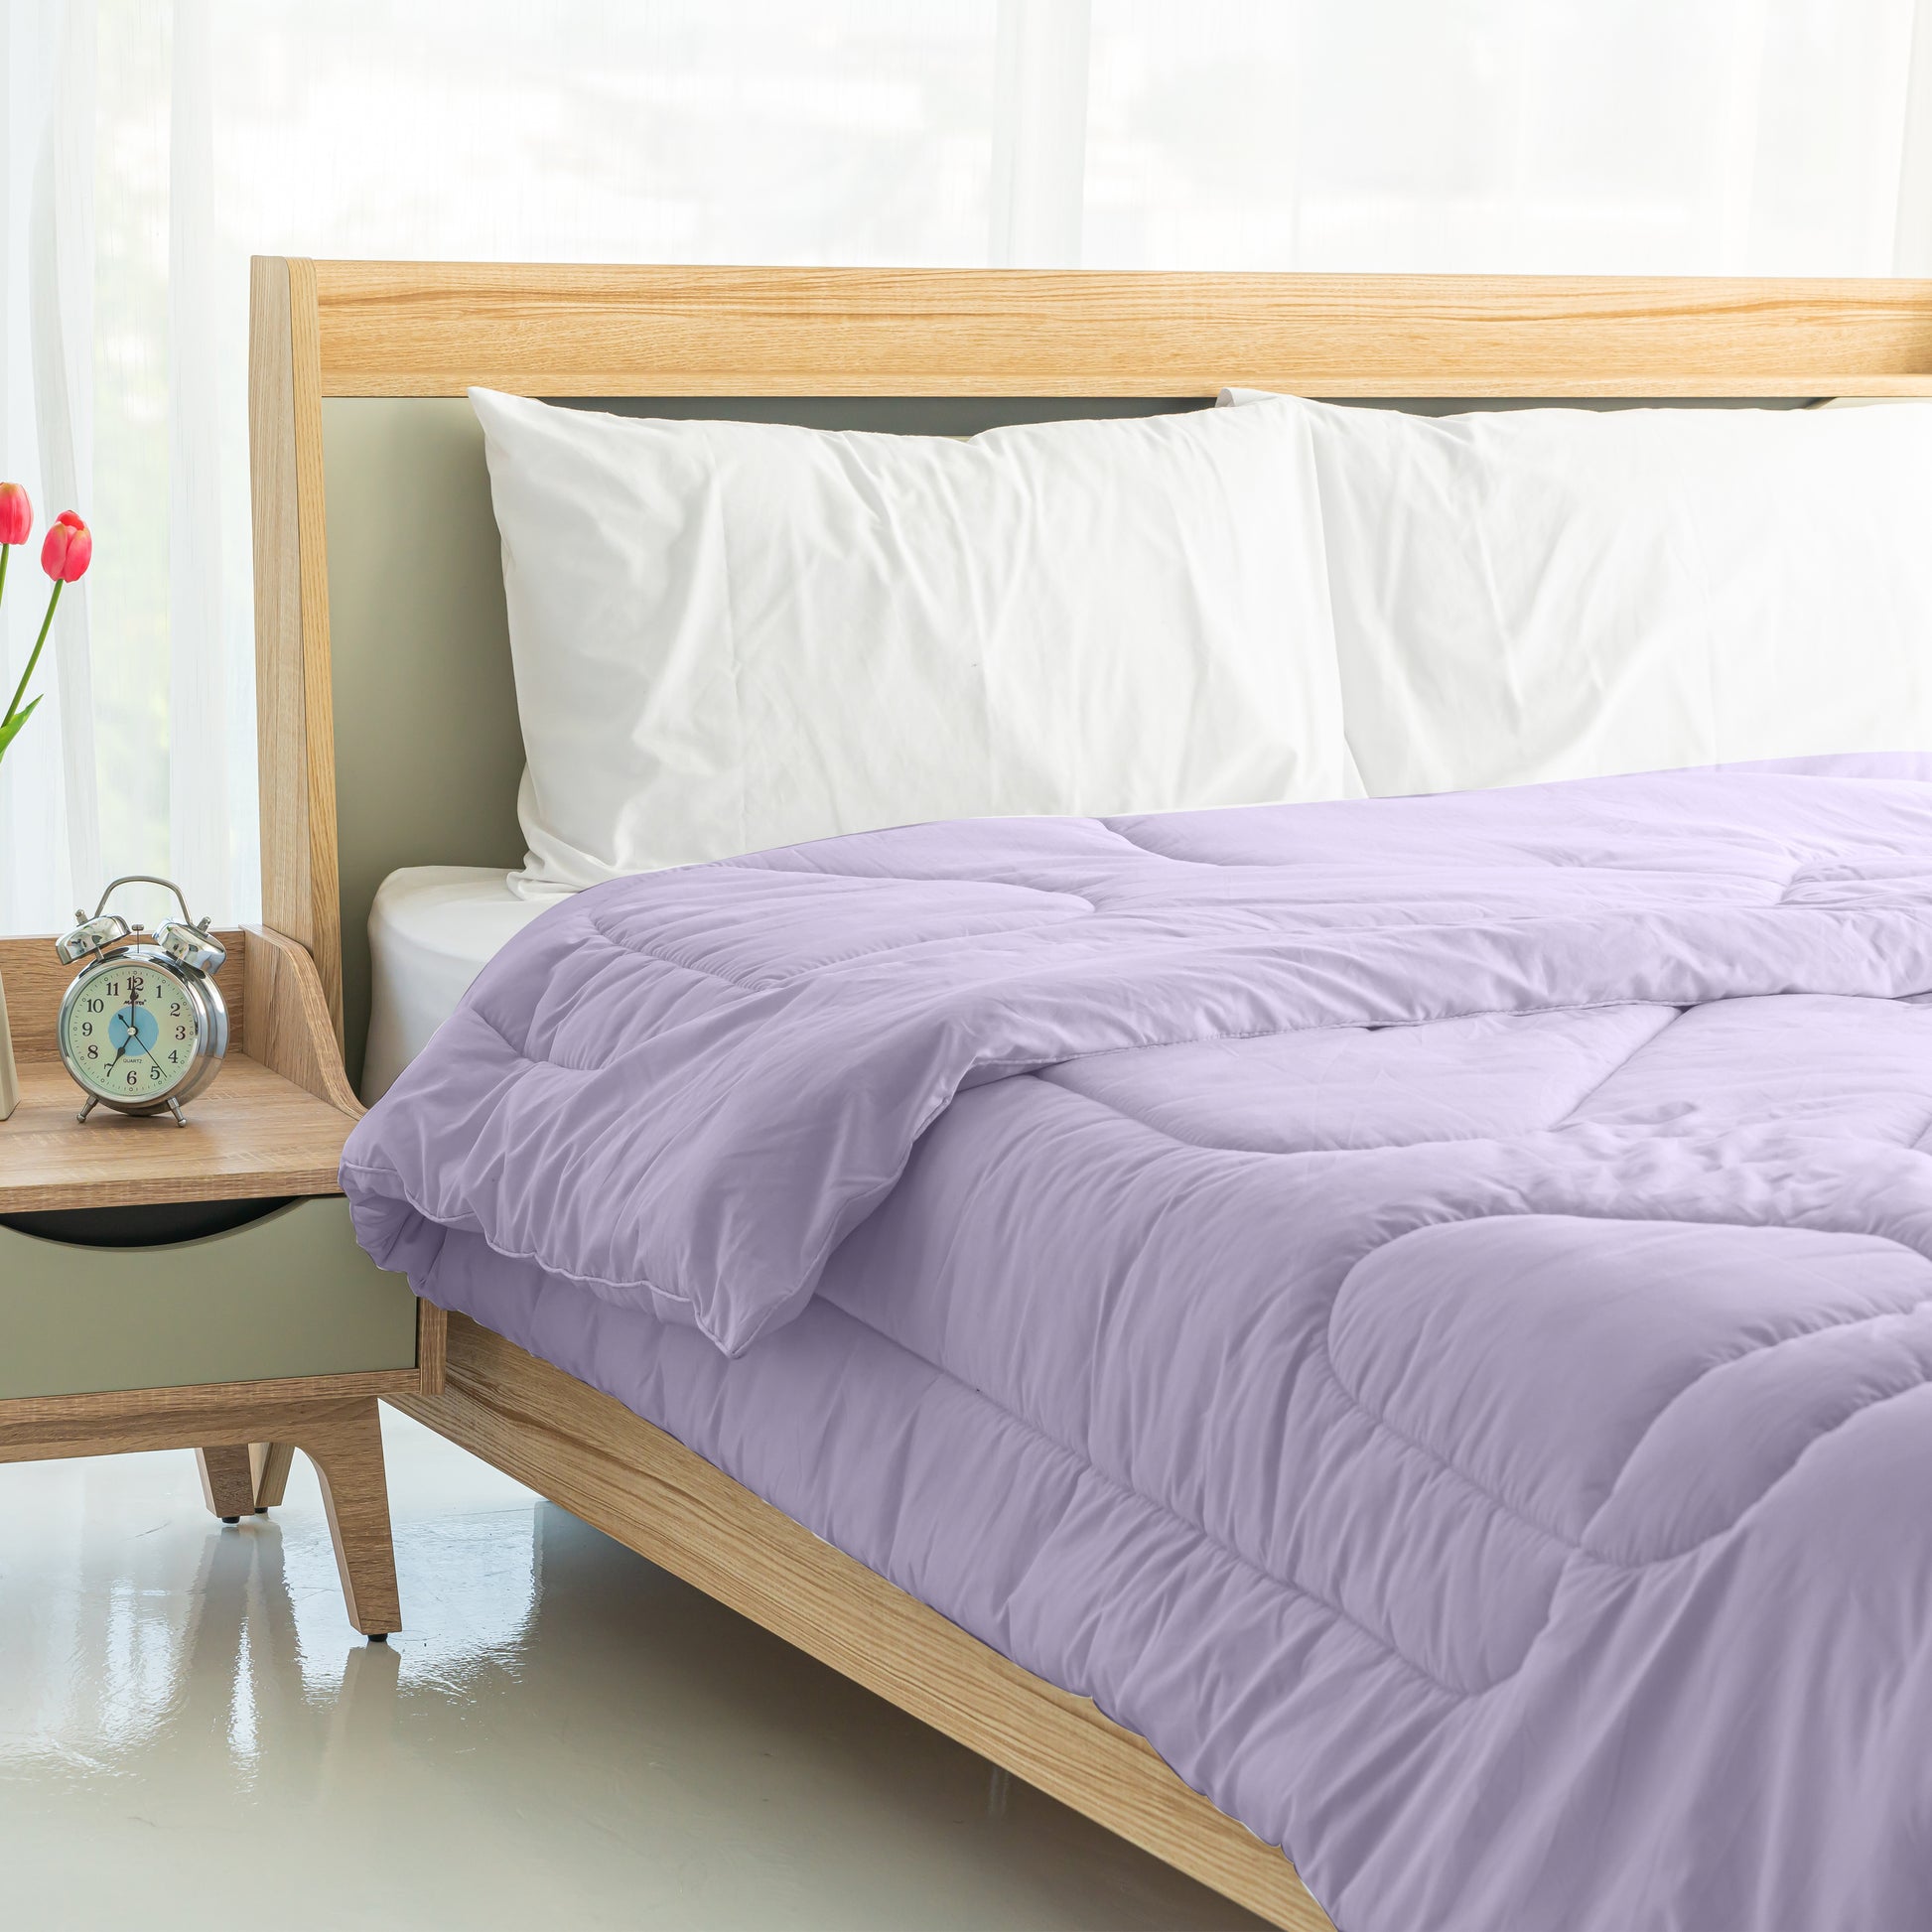 Single Piece Roll Comforter - Light Purple